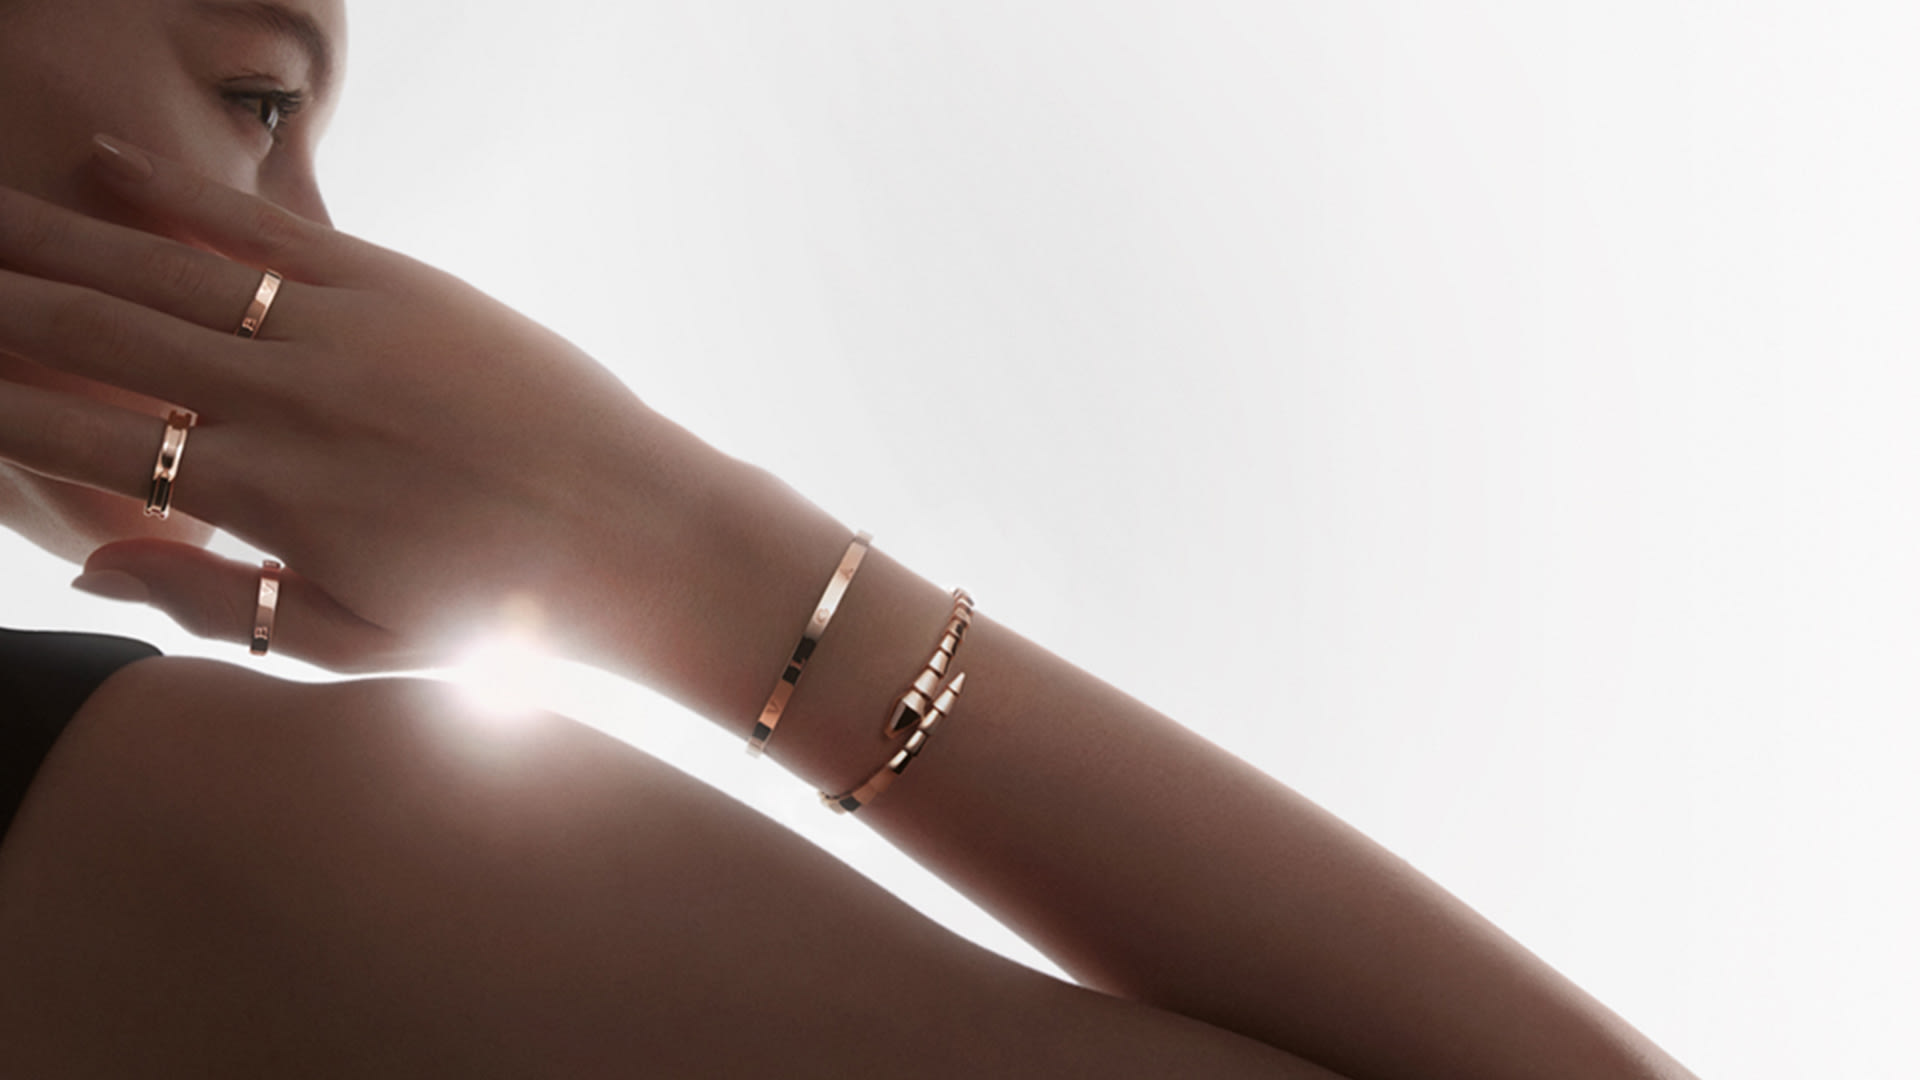 Model wearing Bzero1 bracelets and rings.